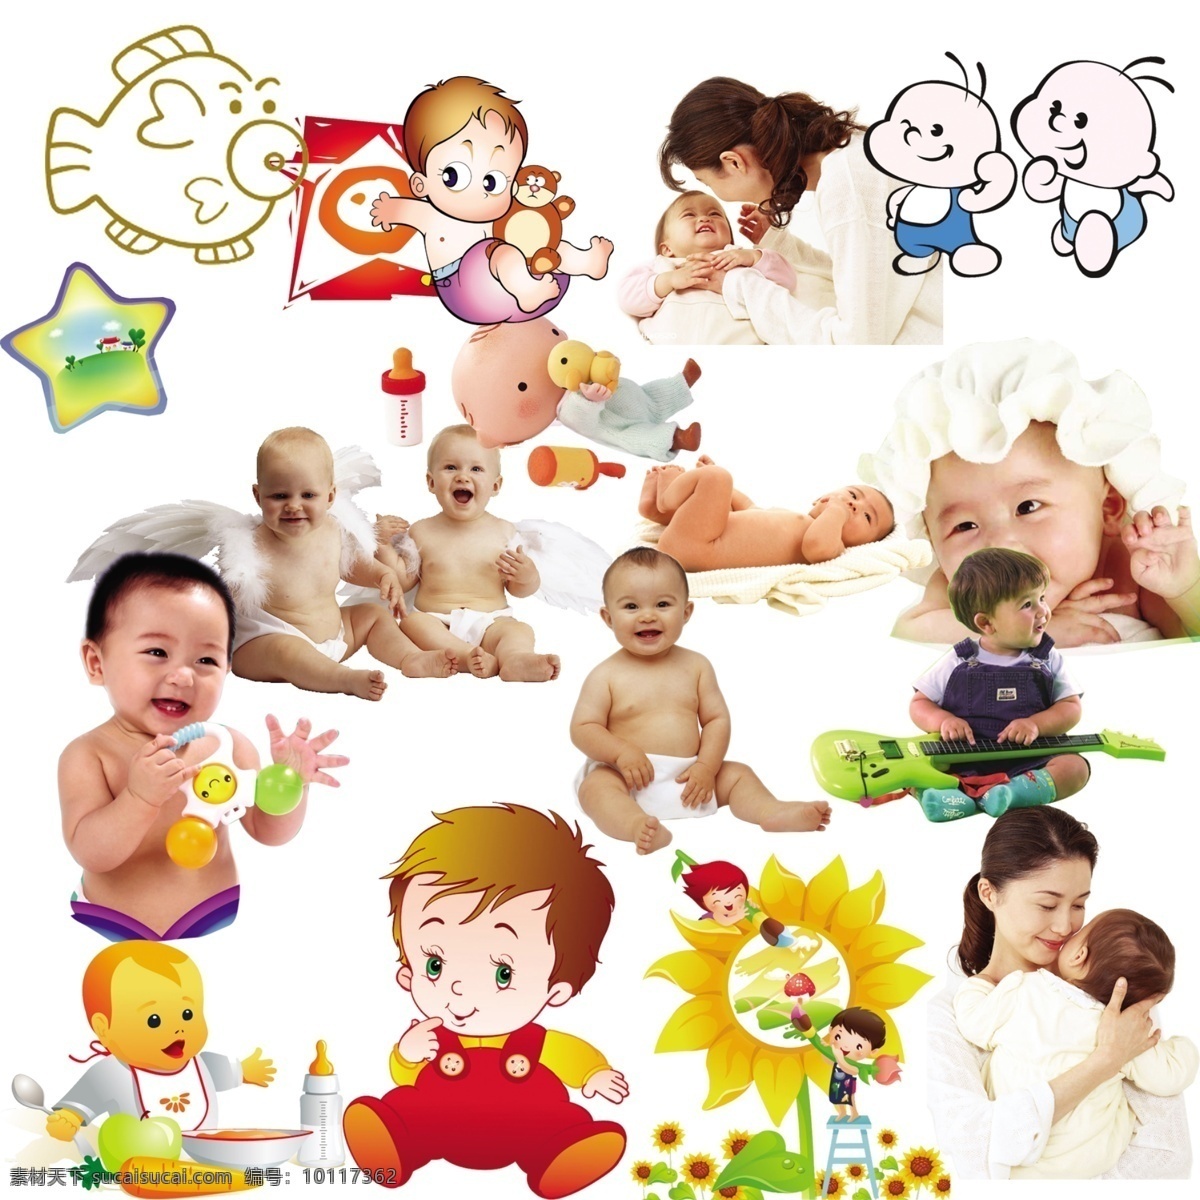 婴儿 母子 人物免费下载 儿童 儿童节 照片 背景 卡通人物 人物 人物ps素材 人物素材 人物图片 玩具 五角 节日素材 六一儿童节